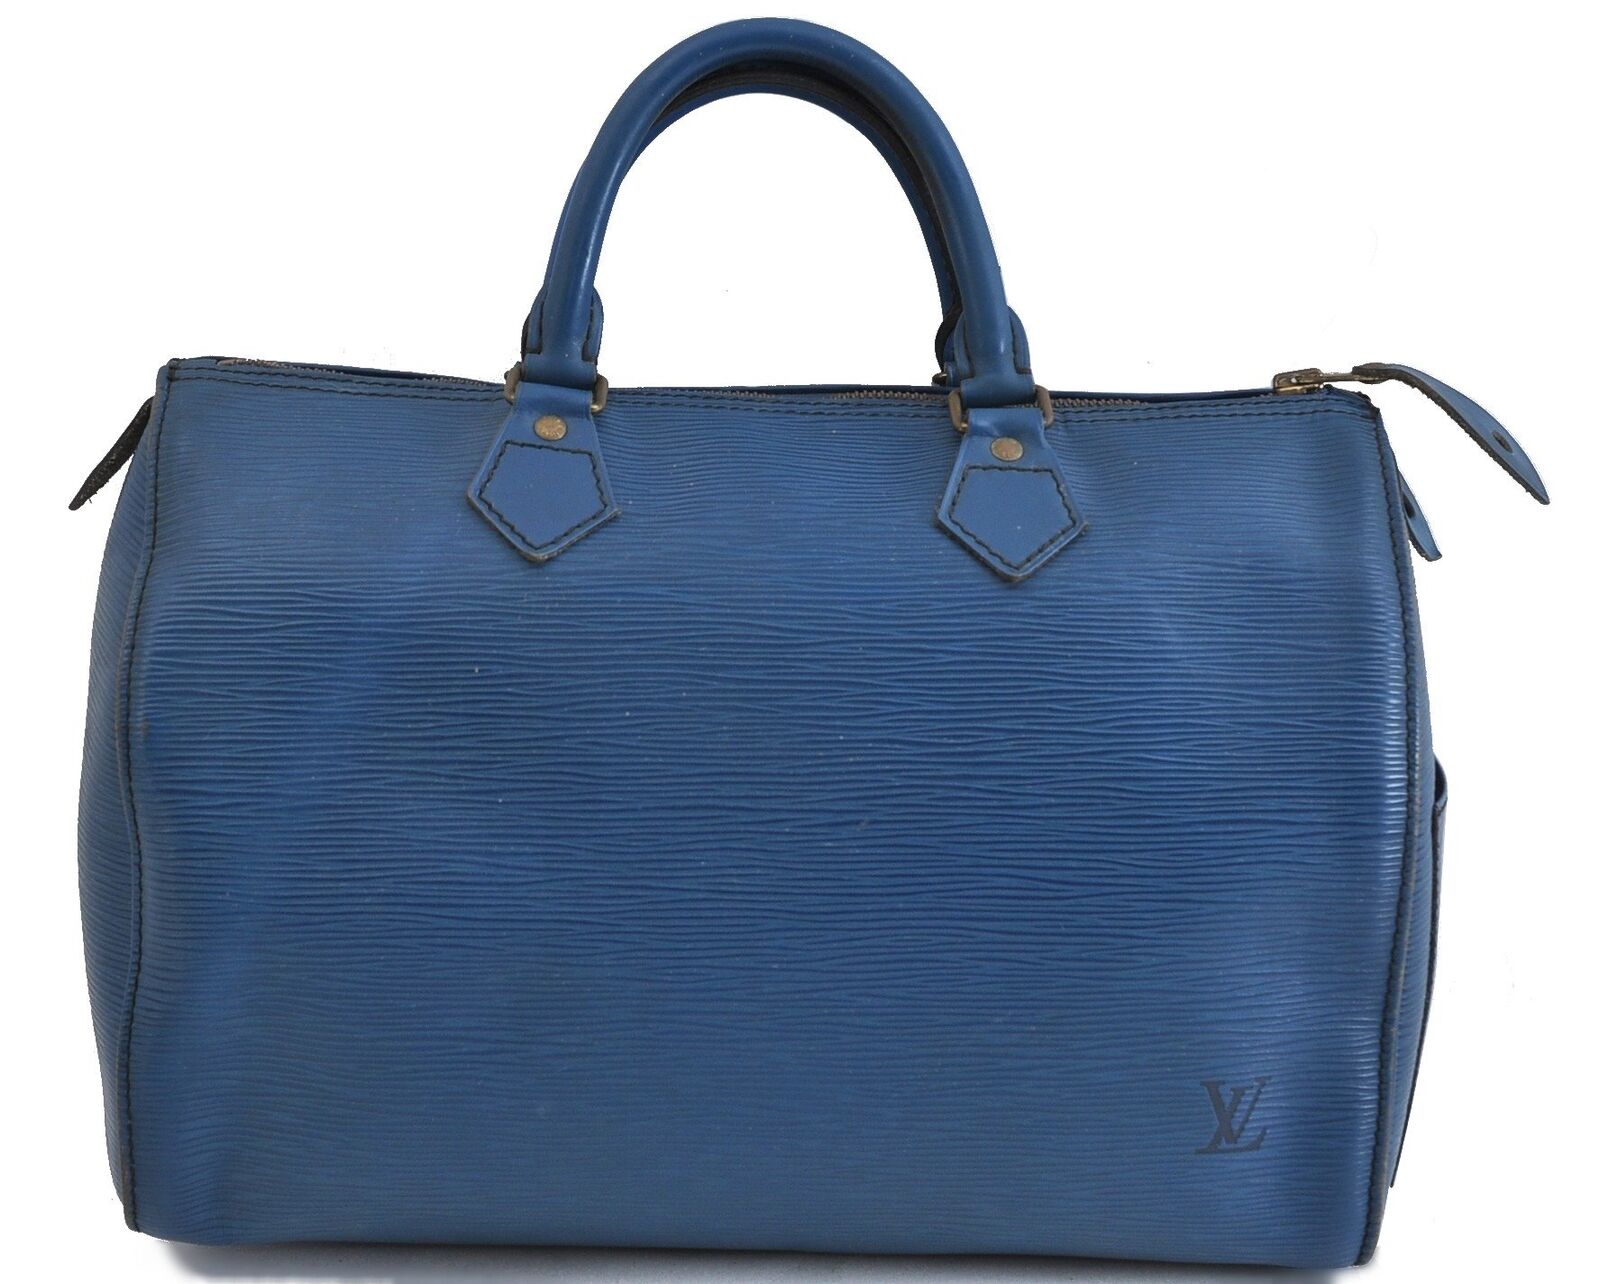 Authentic LOUIS VUITTON Epi Speedy 30 Hand Bag Blue M43005 LV 6159B